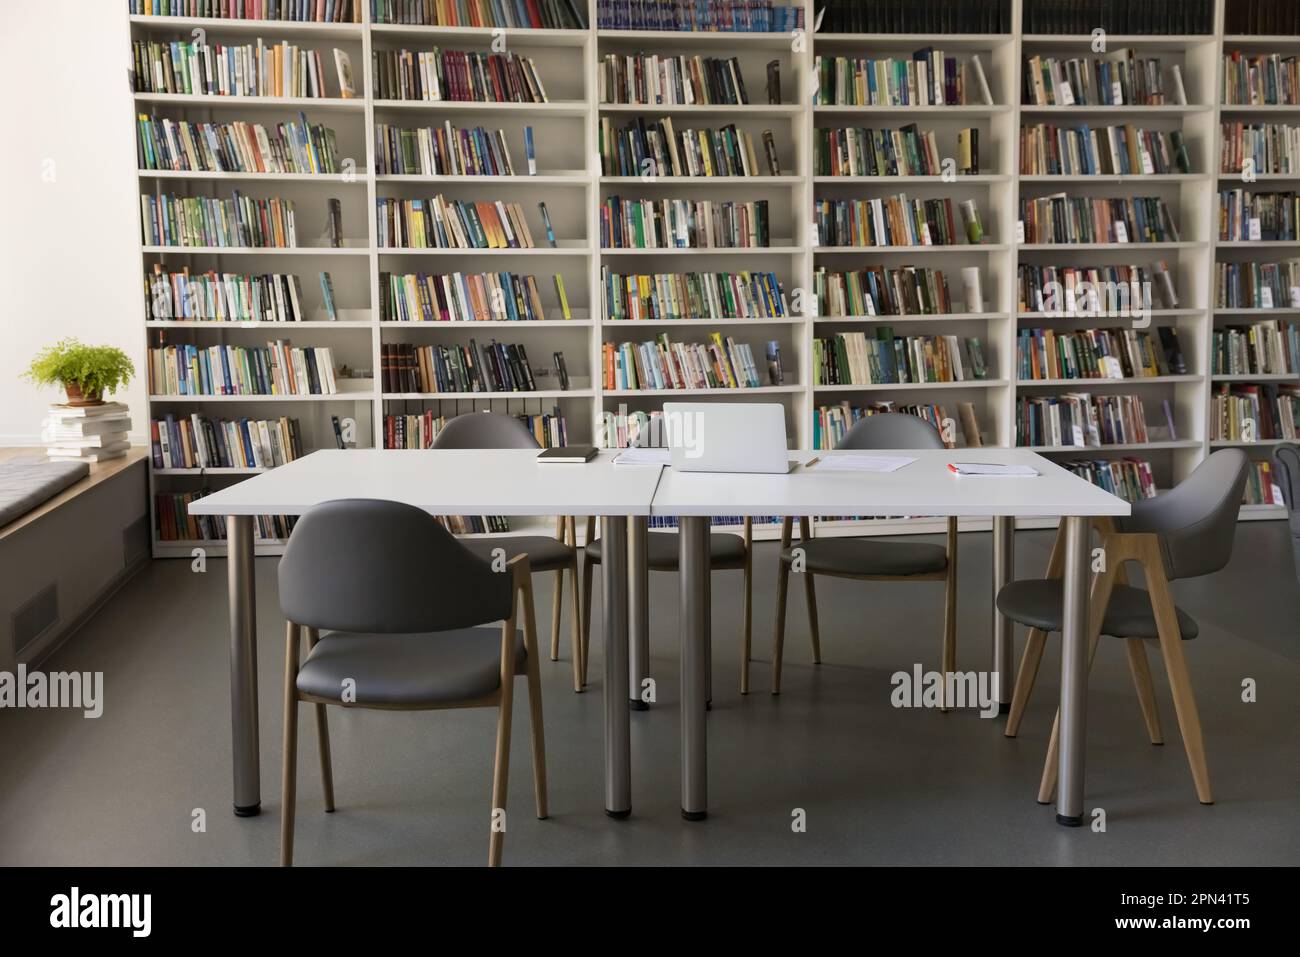 Bücherregale mit Büchern auf Regalen der Universität Stockfoto